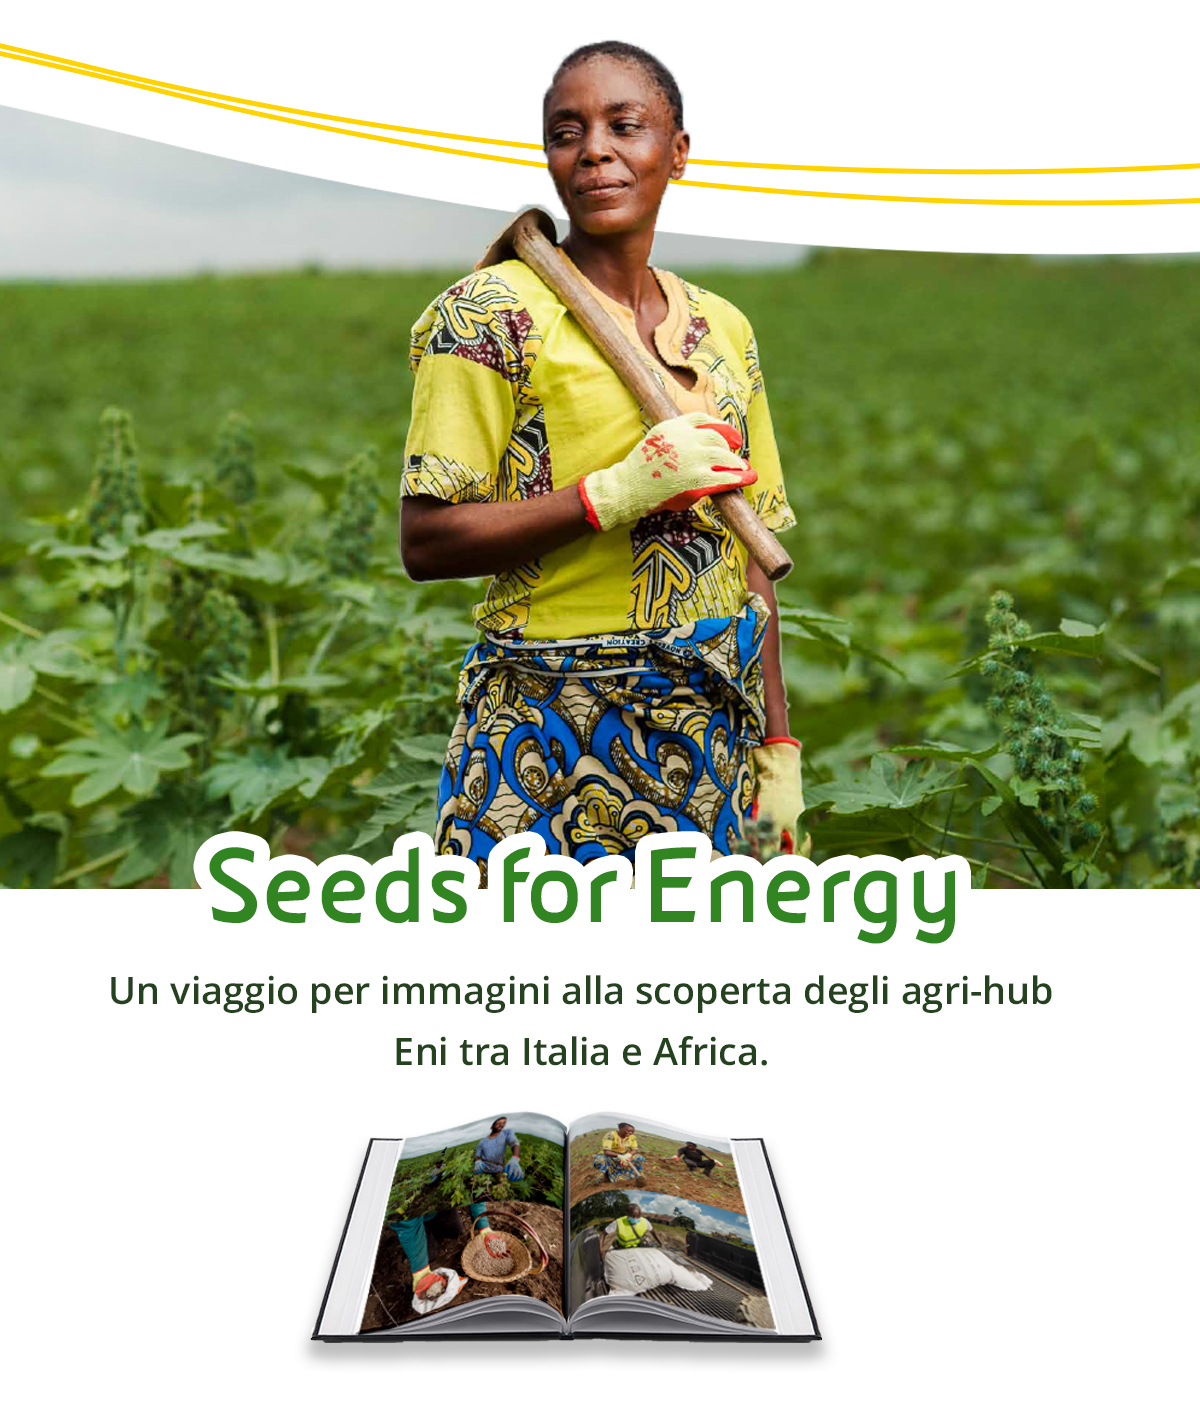 visore-agri-seeds-mobile.jpg